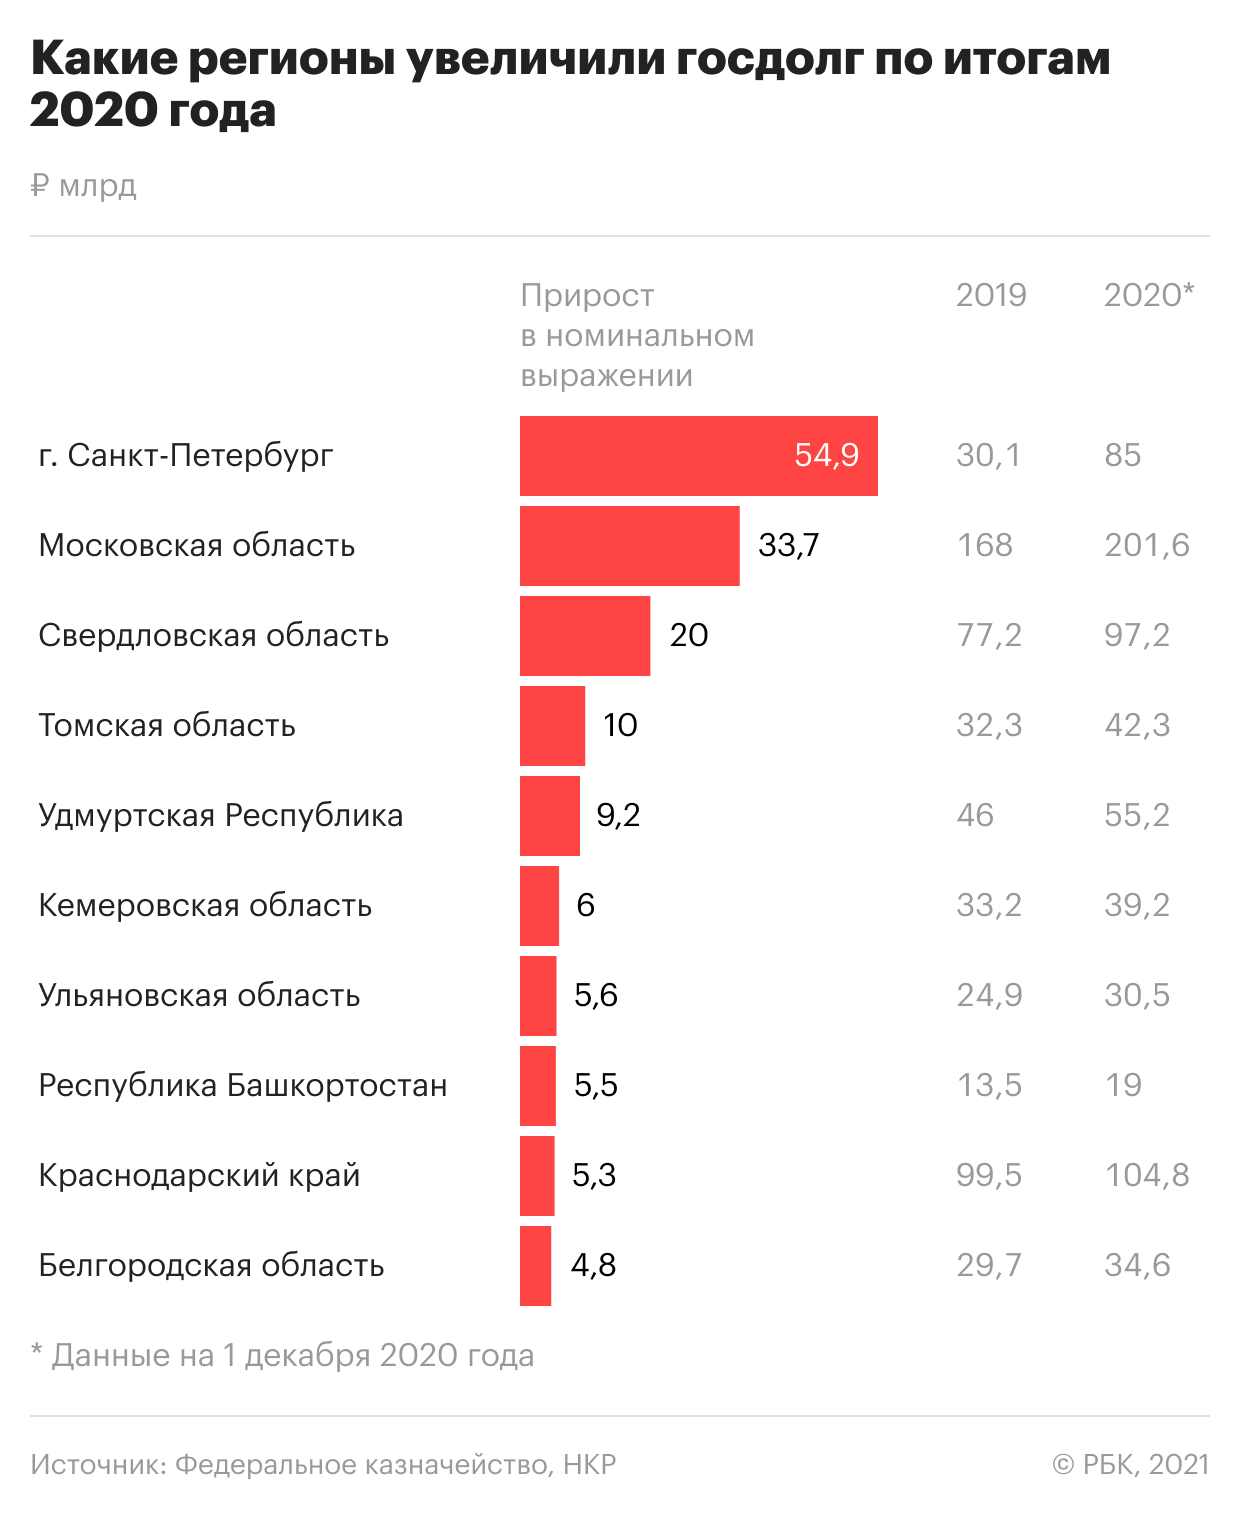 Пандемия привела к дефициту бюджетов почти у 70% российских регионов